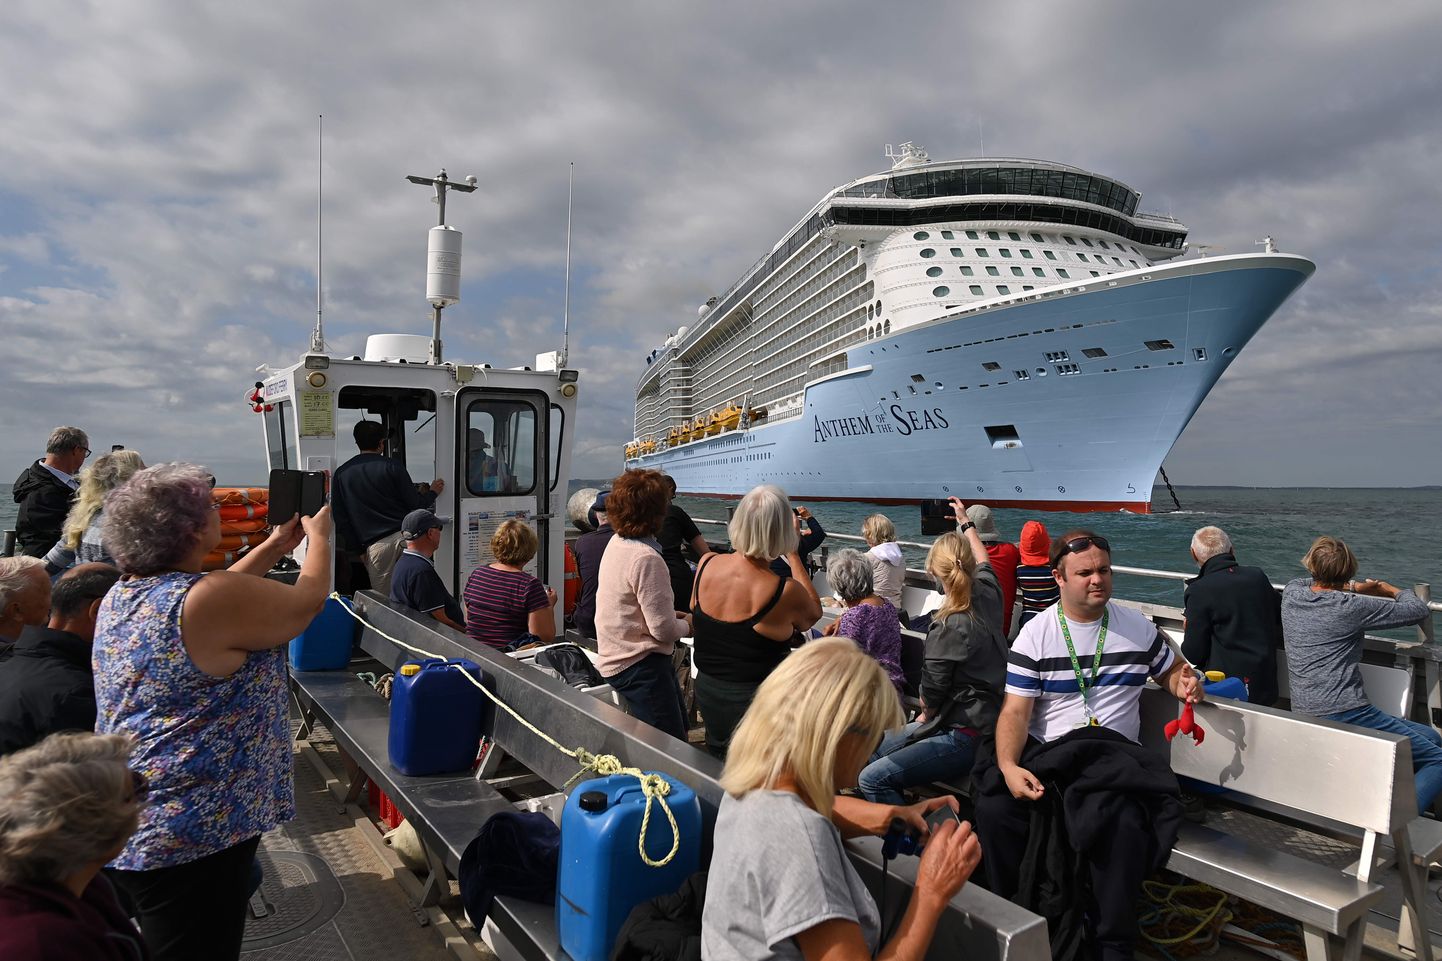 Mudeford Ferry sõidutab huvilisi vaatama Dorseti ranniku lähedal ankrus seisvaid ristluslaevu. Turistid pildistavad kruiisilaeva Anthem of the Seas.